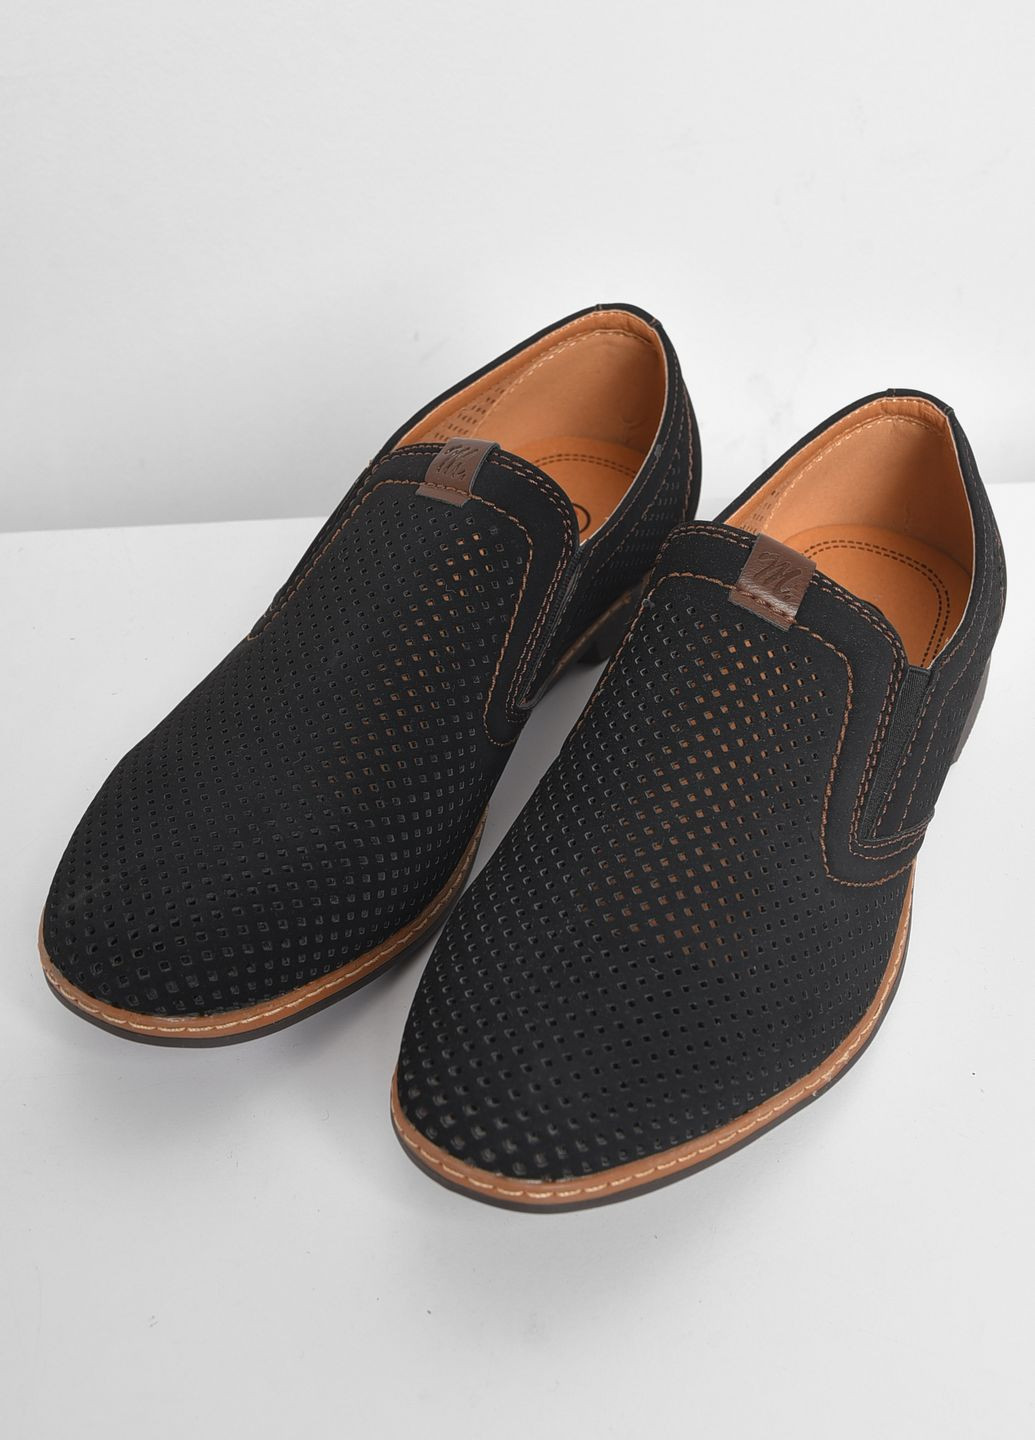 Черные классические туфли мужские черного цвета Let's Shop без шнурков